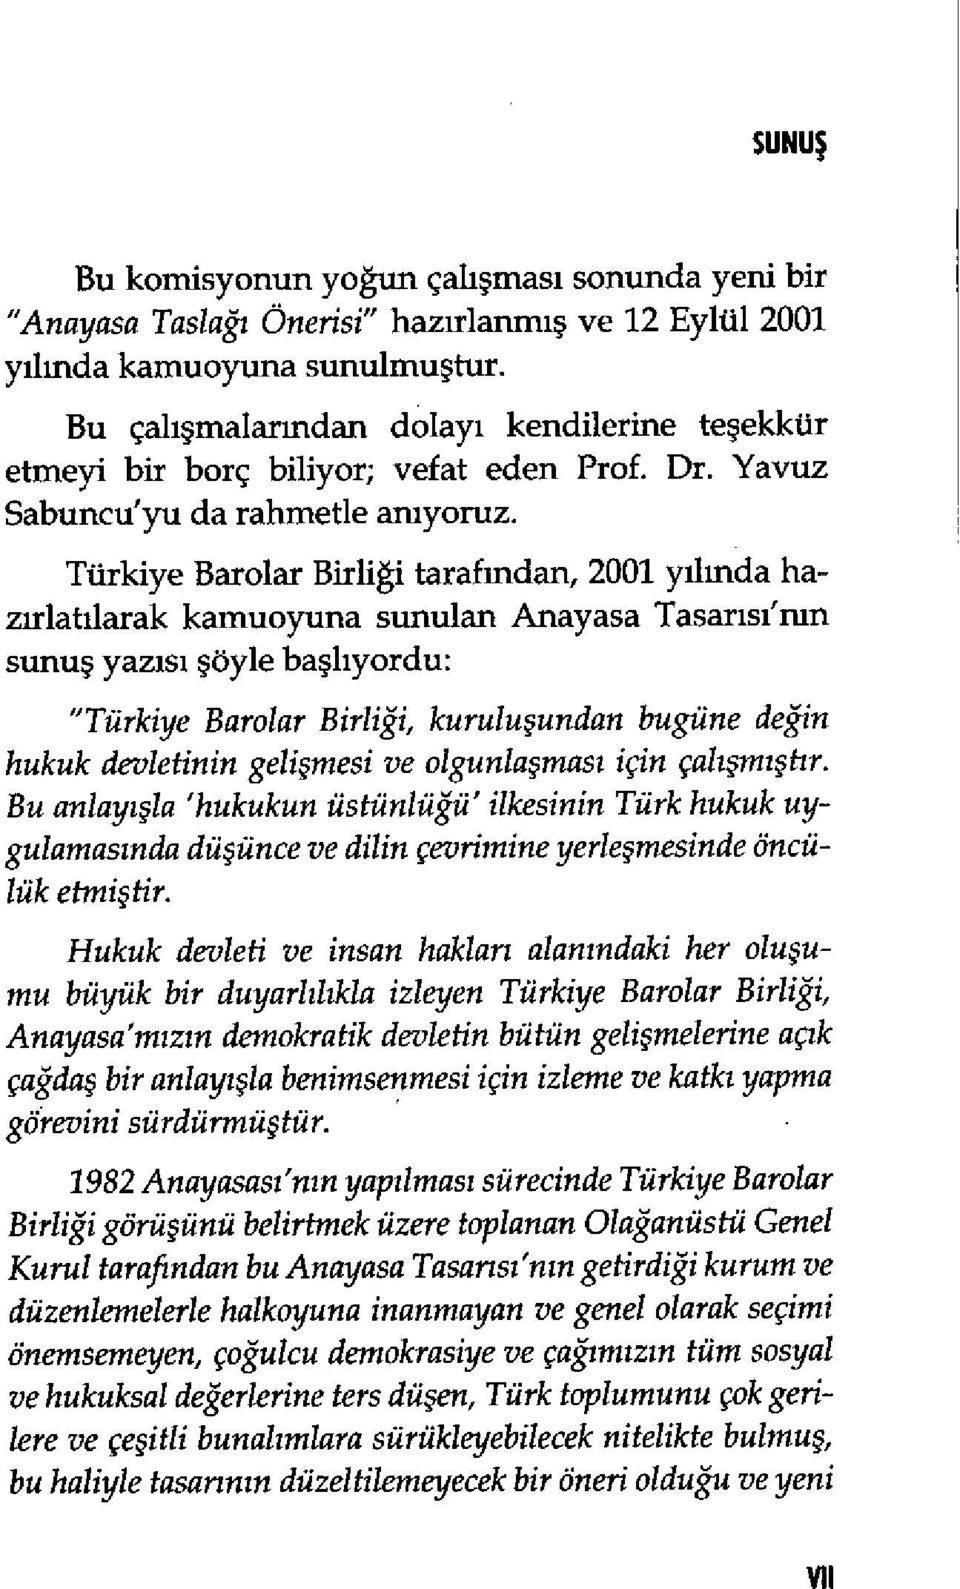 Turkiye Barolar Birligi tarafmdan, 2001 yilmda hazirlatilarak kamuoyuna sunulan Anayasa Tasarisi'nrn sunu yazisi oy1e ba1iyordu: "Turkiye Barolar Birligi, kuruluundan bugune degin hukuk devietinin